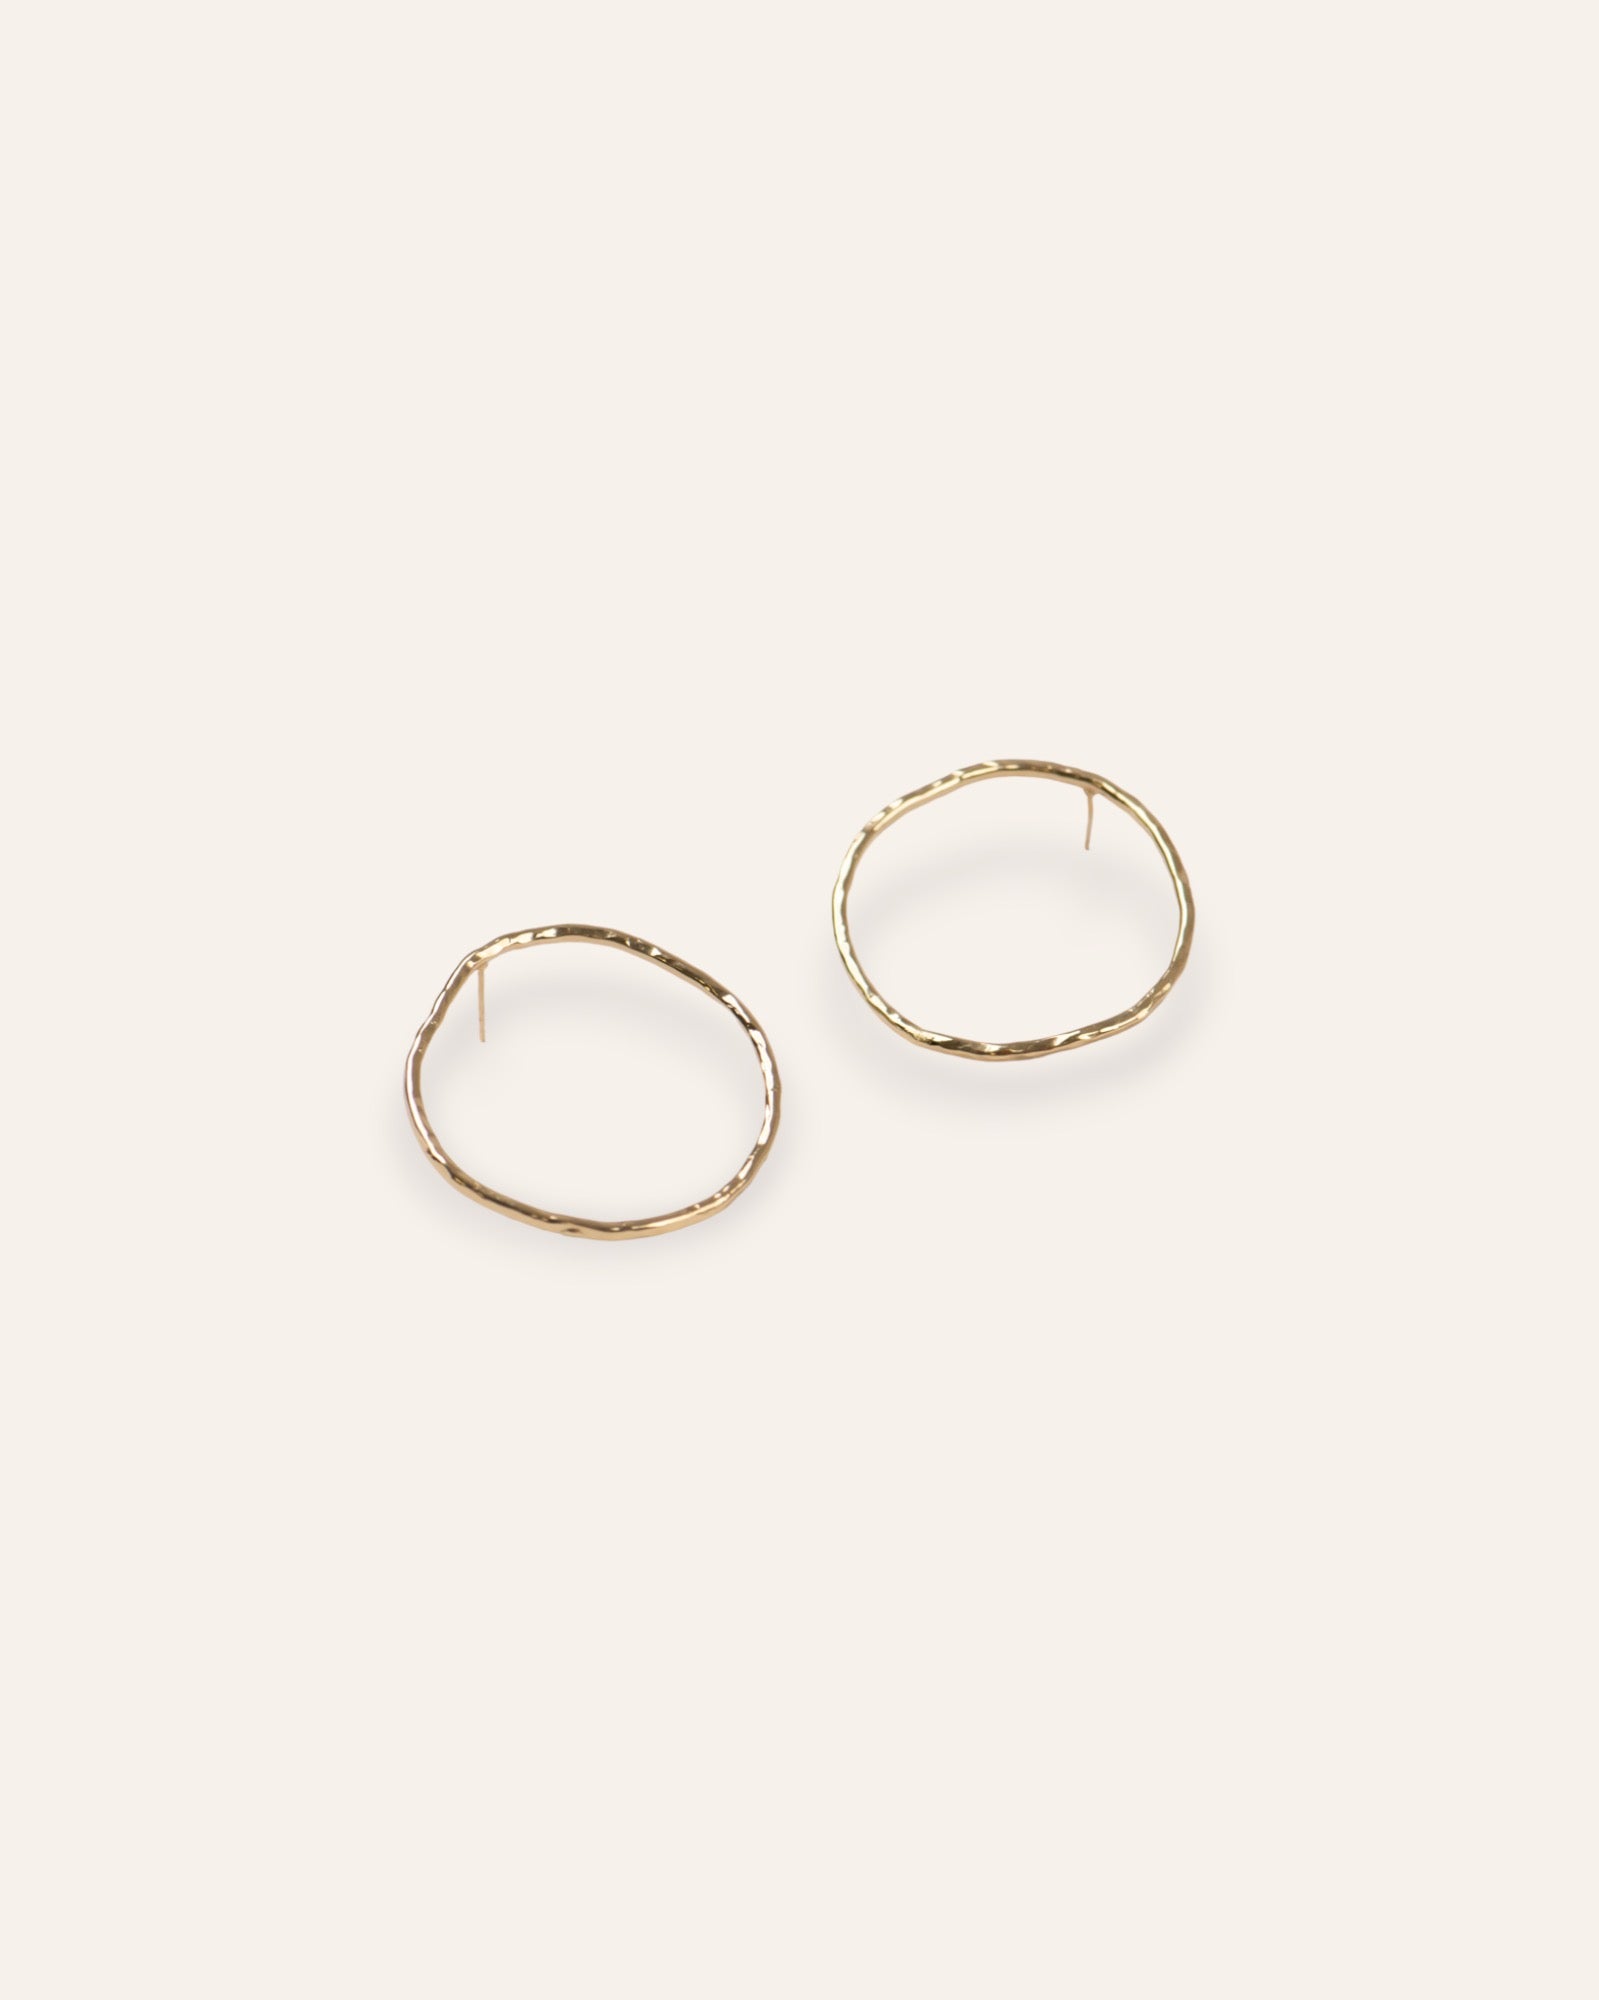 Boucles d'oreilles en plaqué or 18 carats, composées d'un anneau martelé de forme irrégulière.